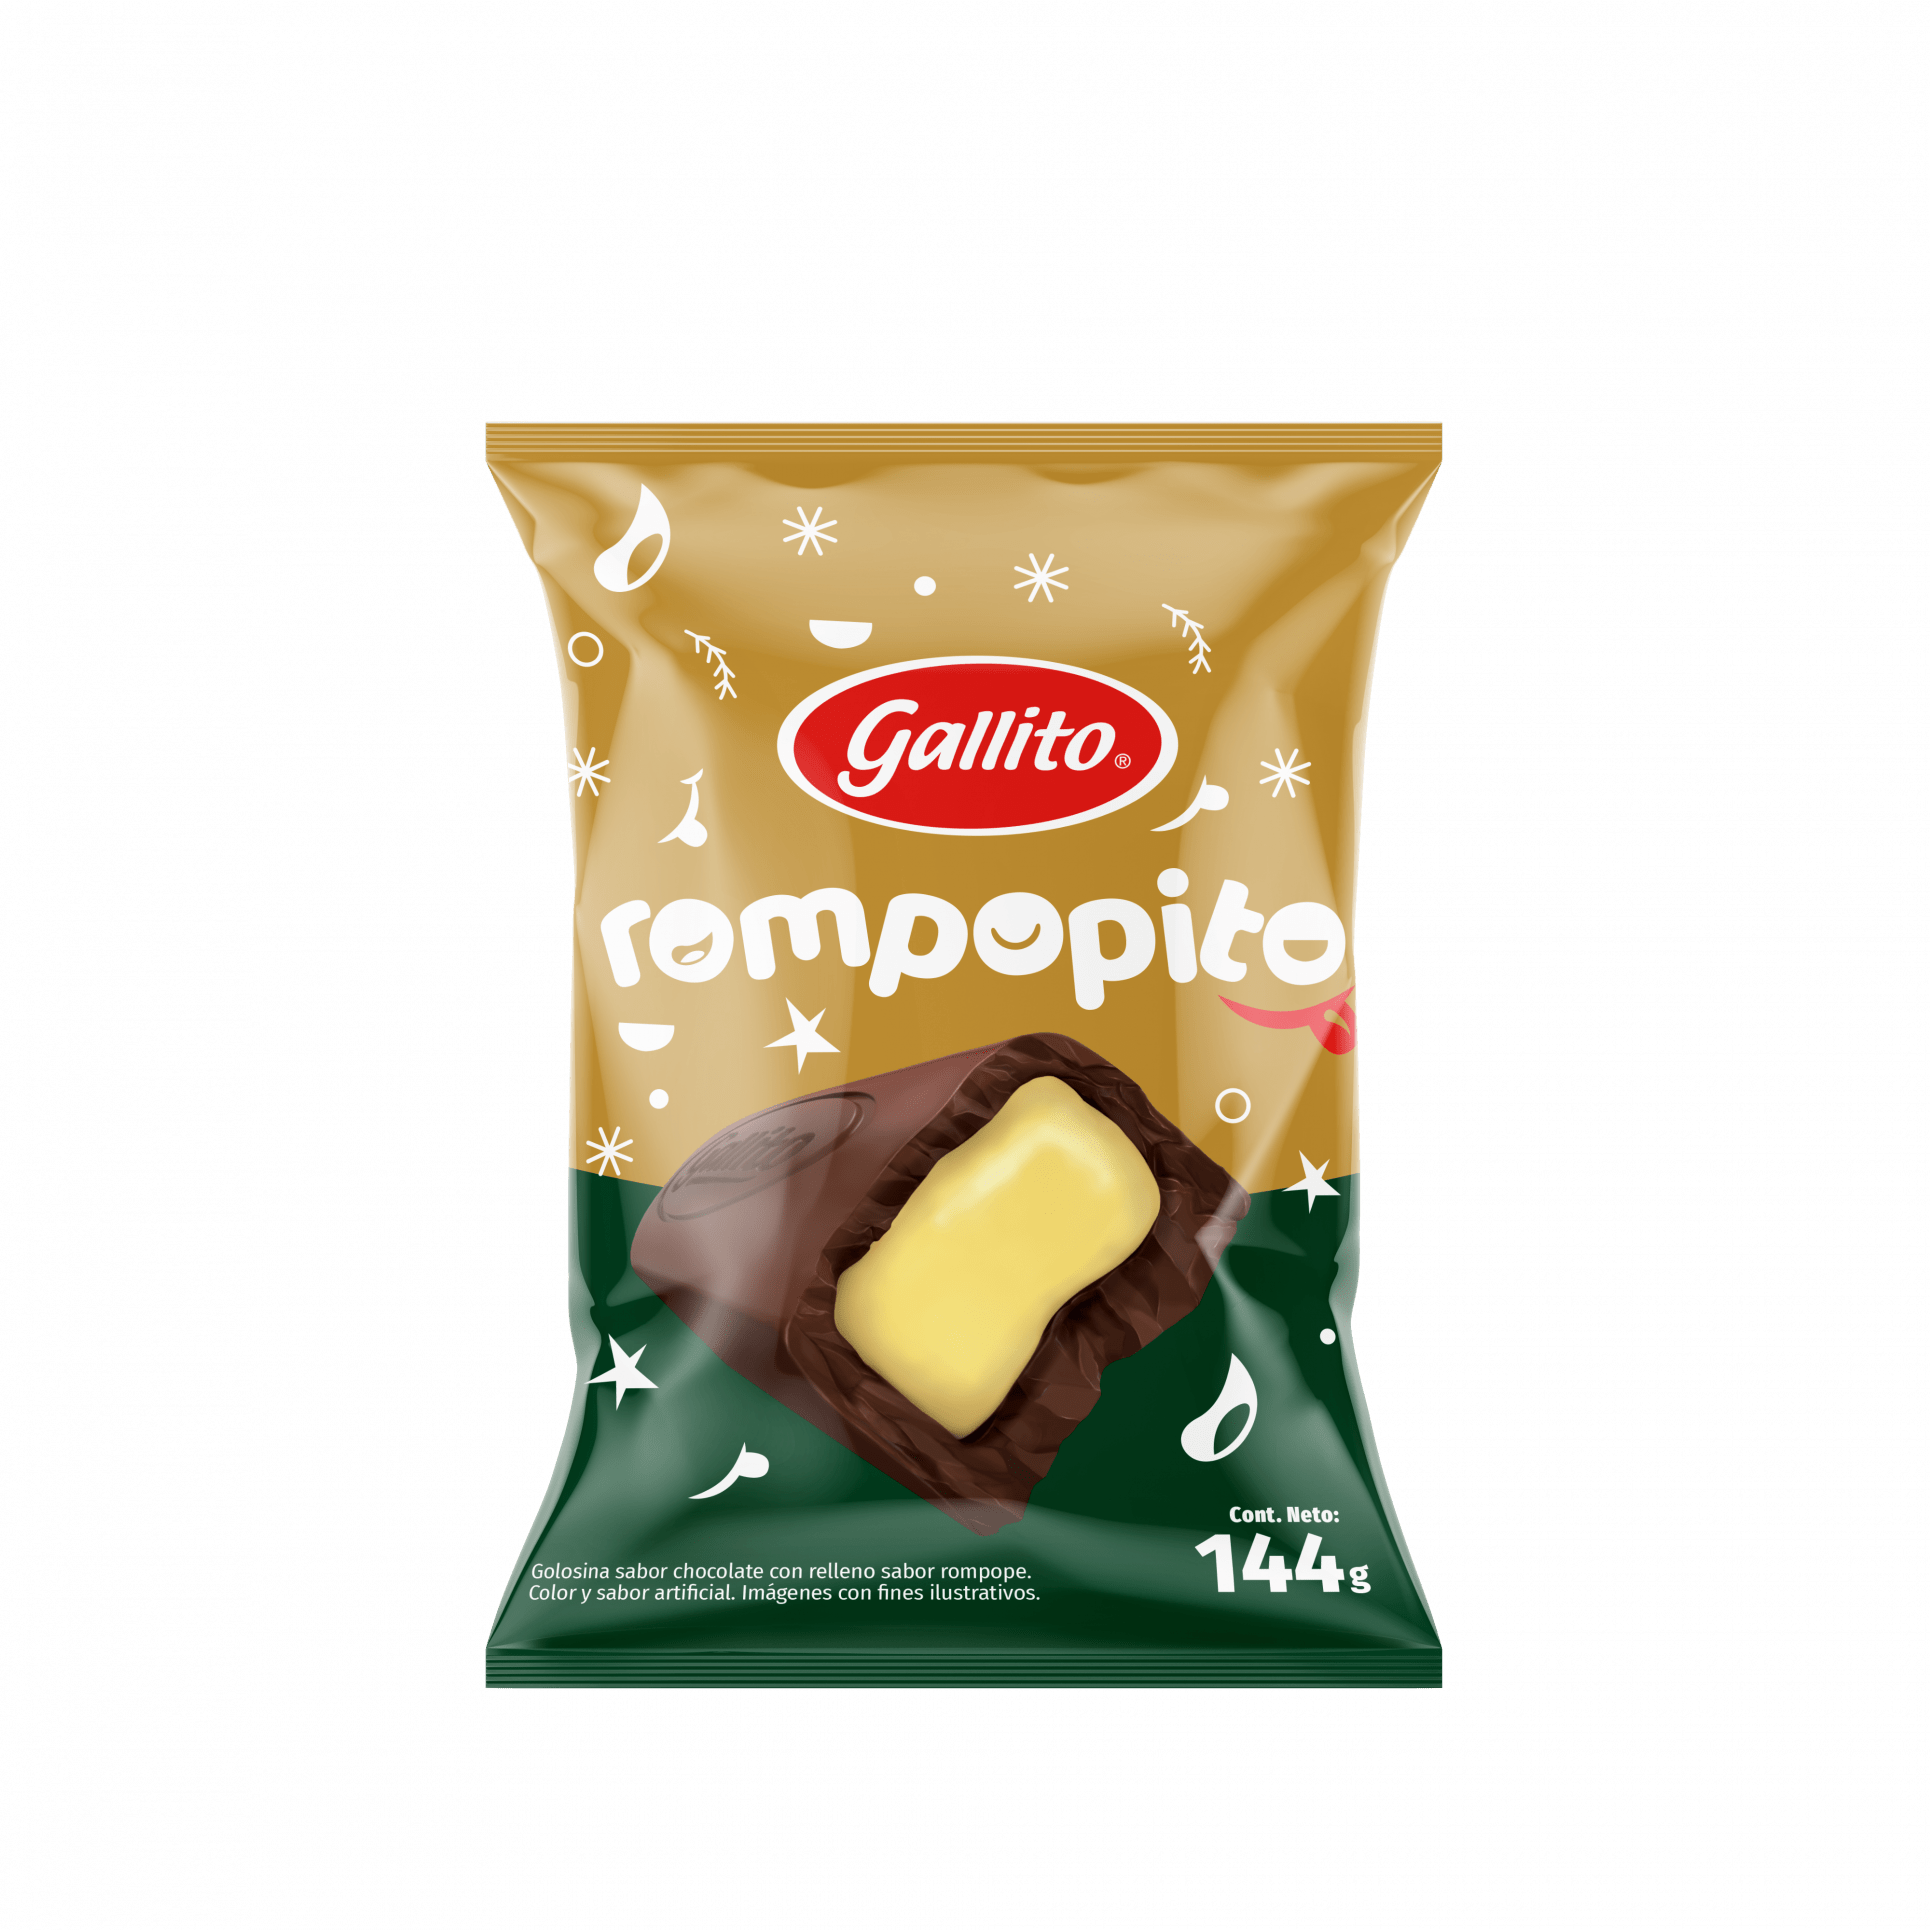 Gallito lanza chocolates con sabores a amaretto (con trozos de galleta Trits) y rompope